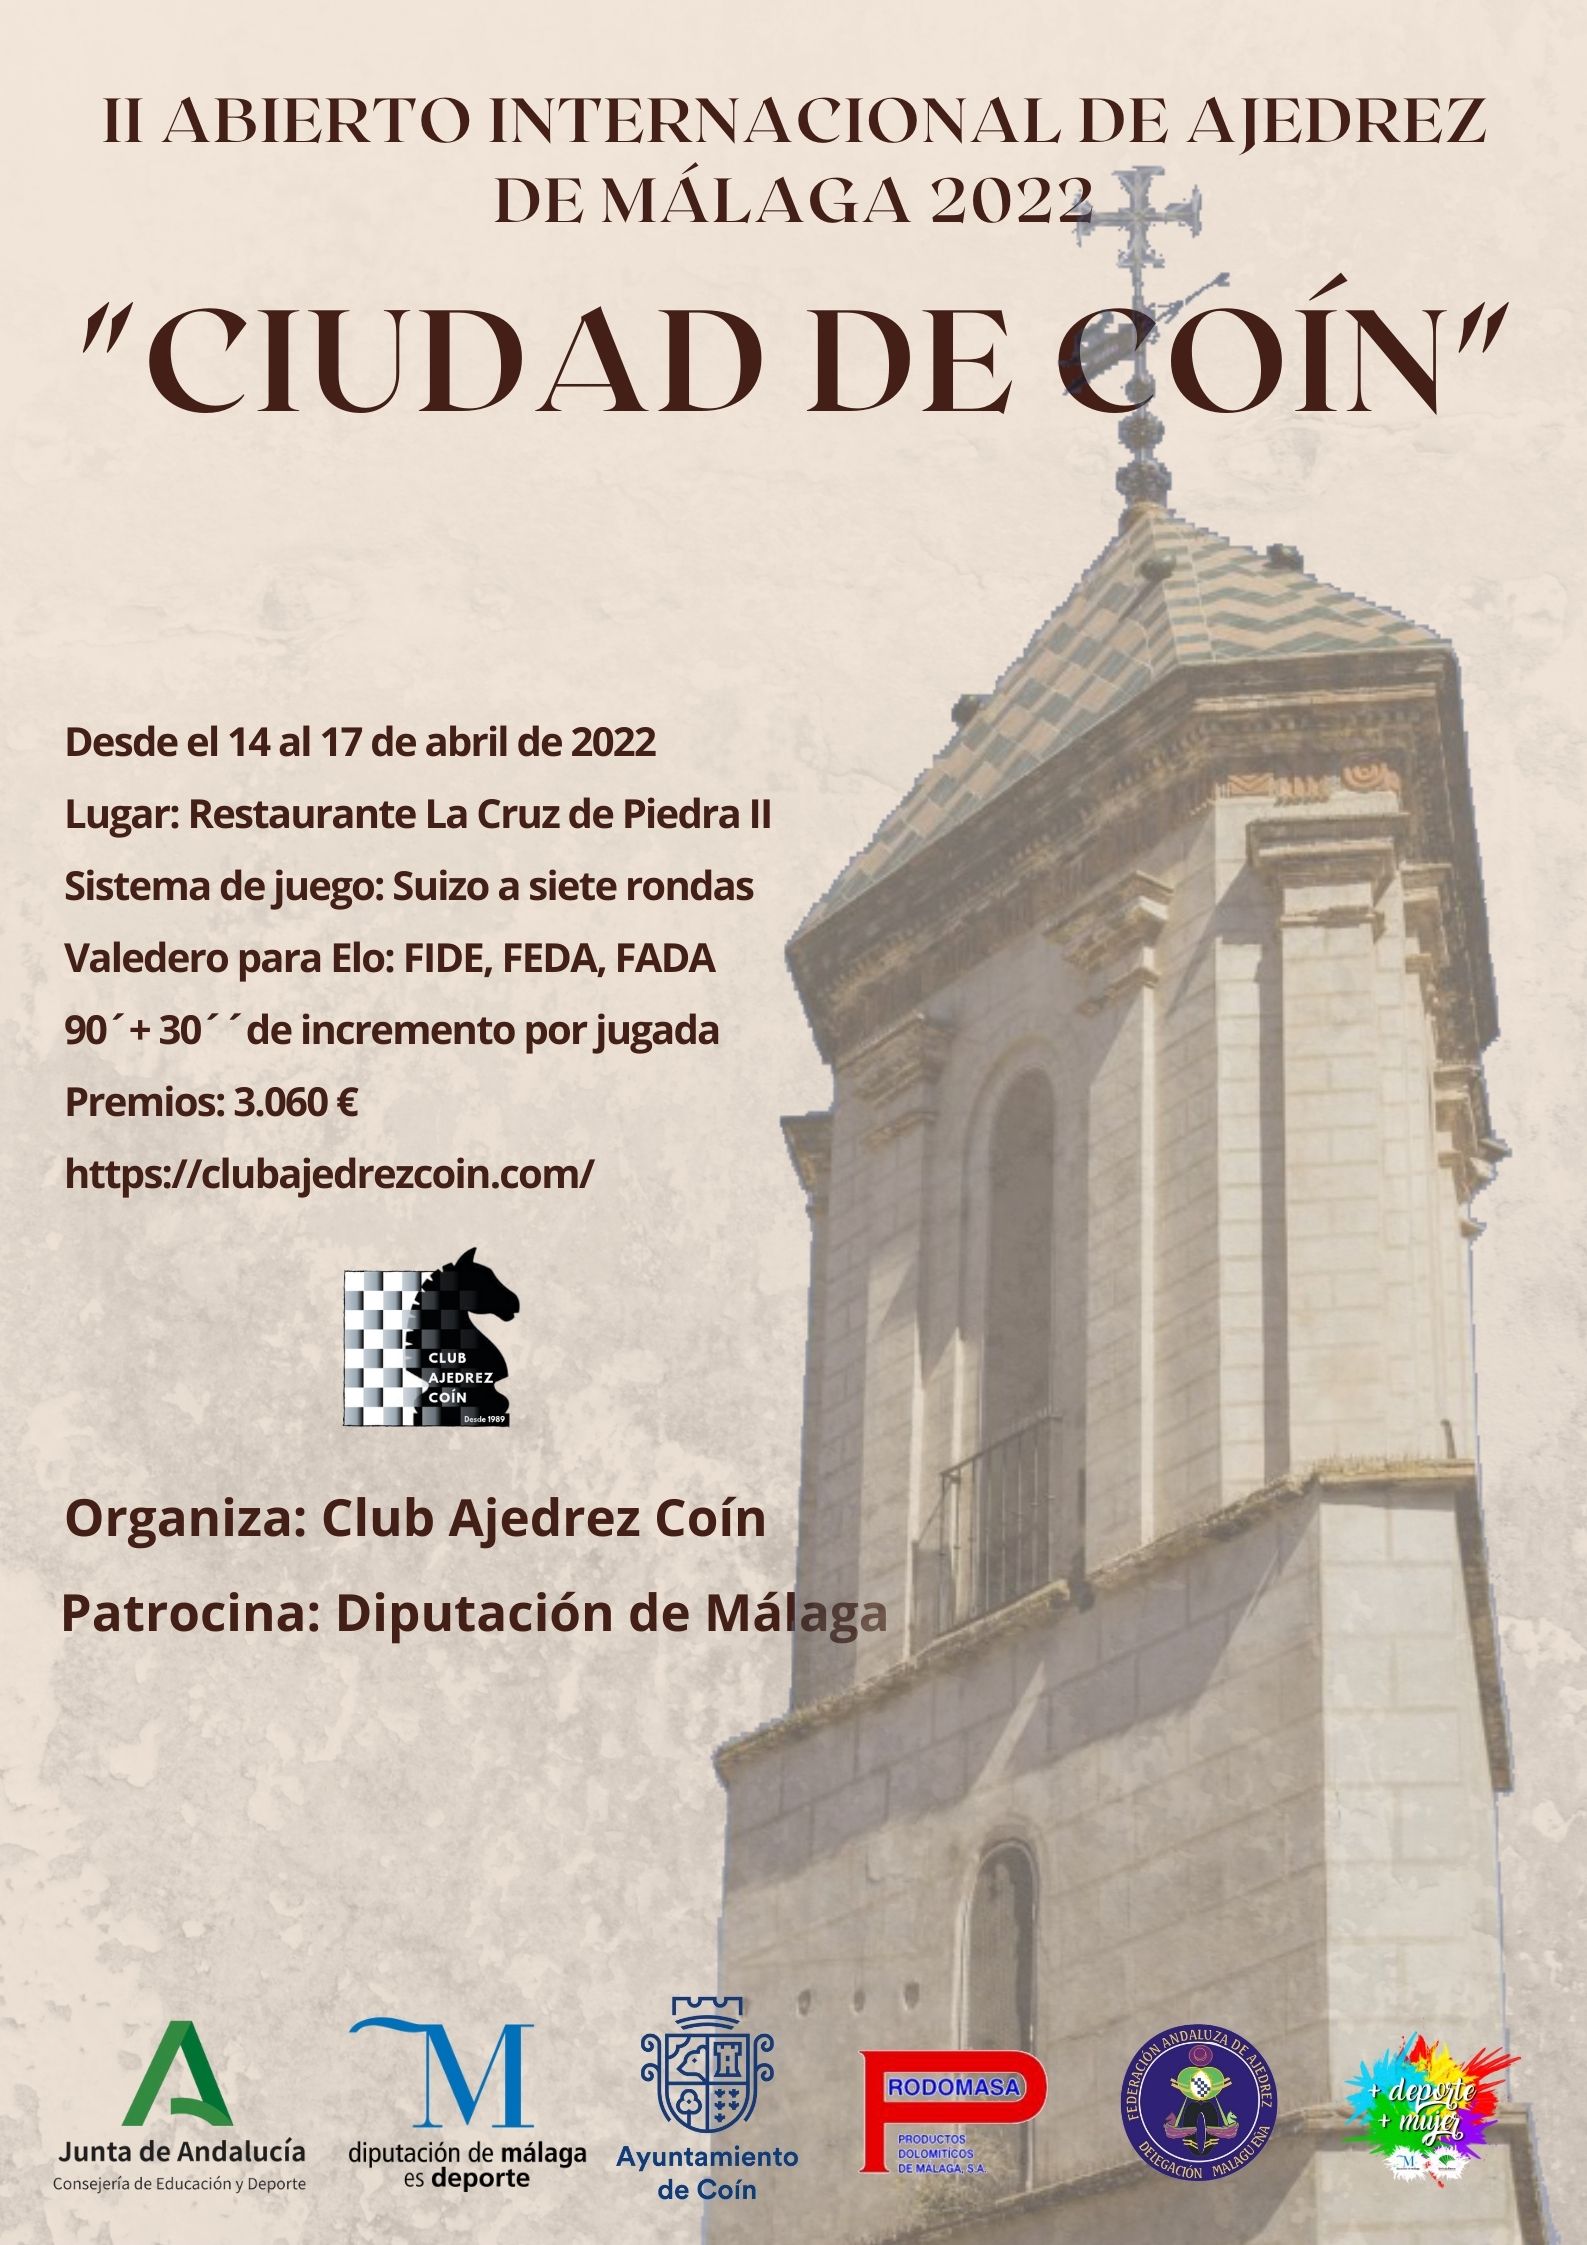 II Abierto Internacional de Ajedrez de Málaga 2022 “Ciudad de Coín”